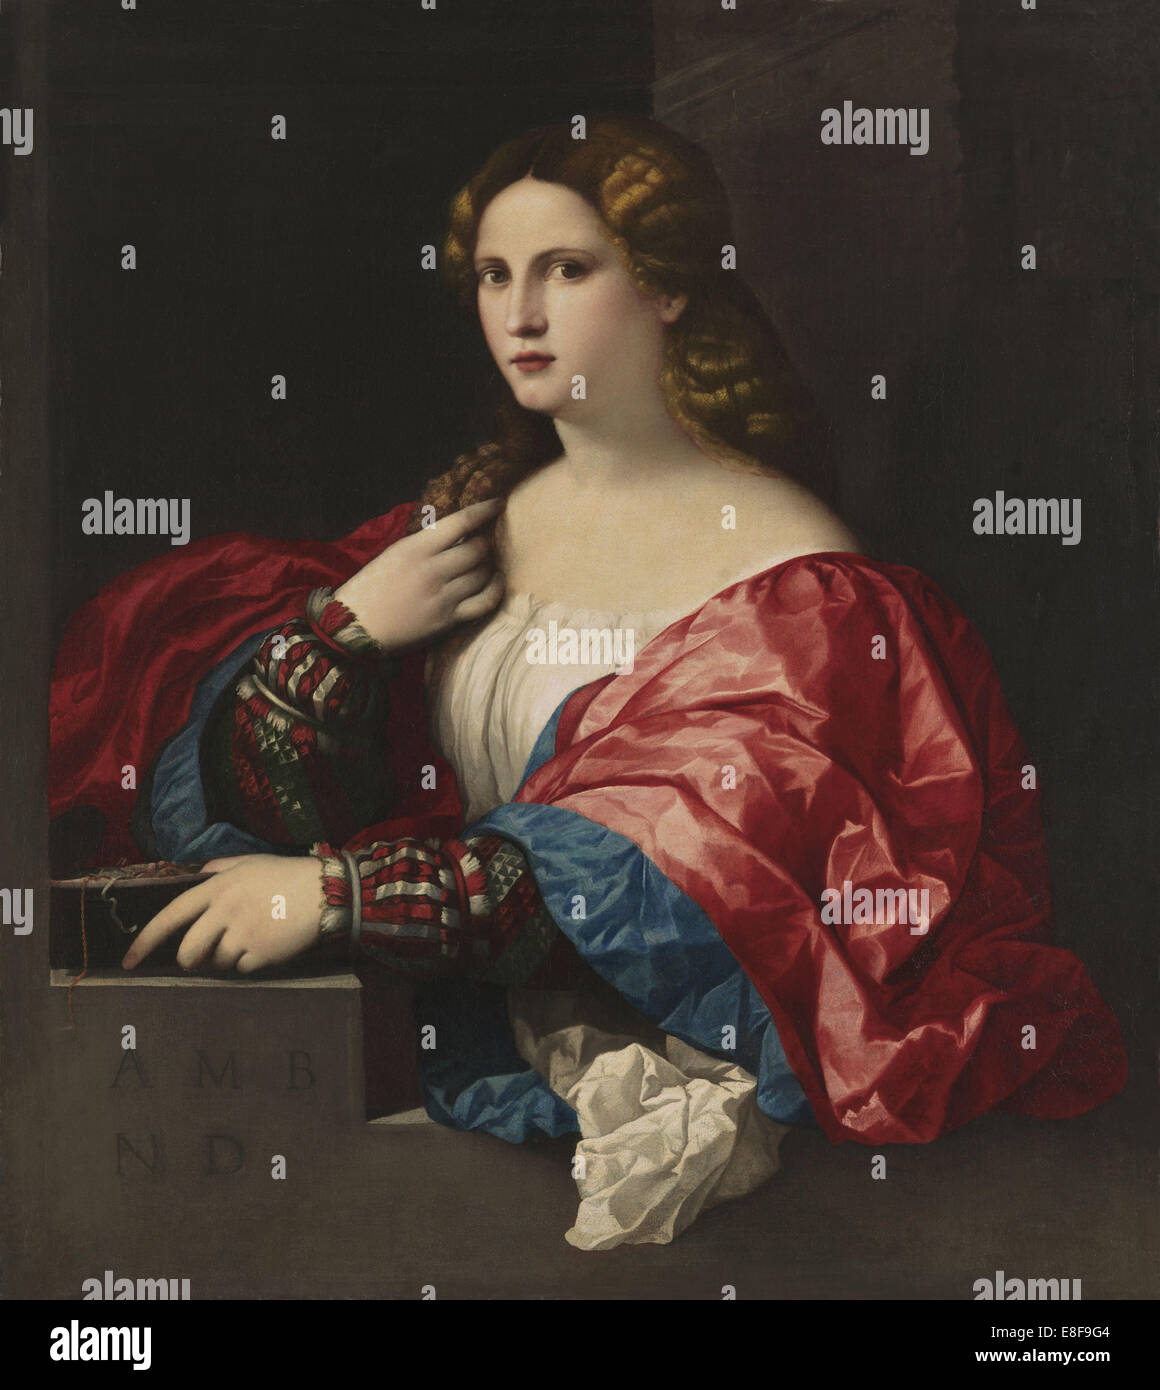 Portrait of a young woman (La Bella). Artist: Palma il Vecchio, Jacopo, the Elder (1480-1528) Stock Photo